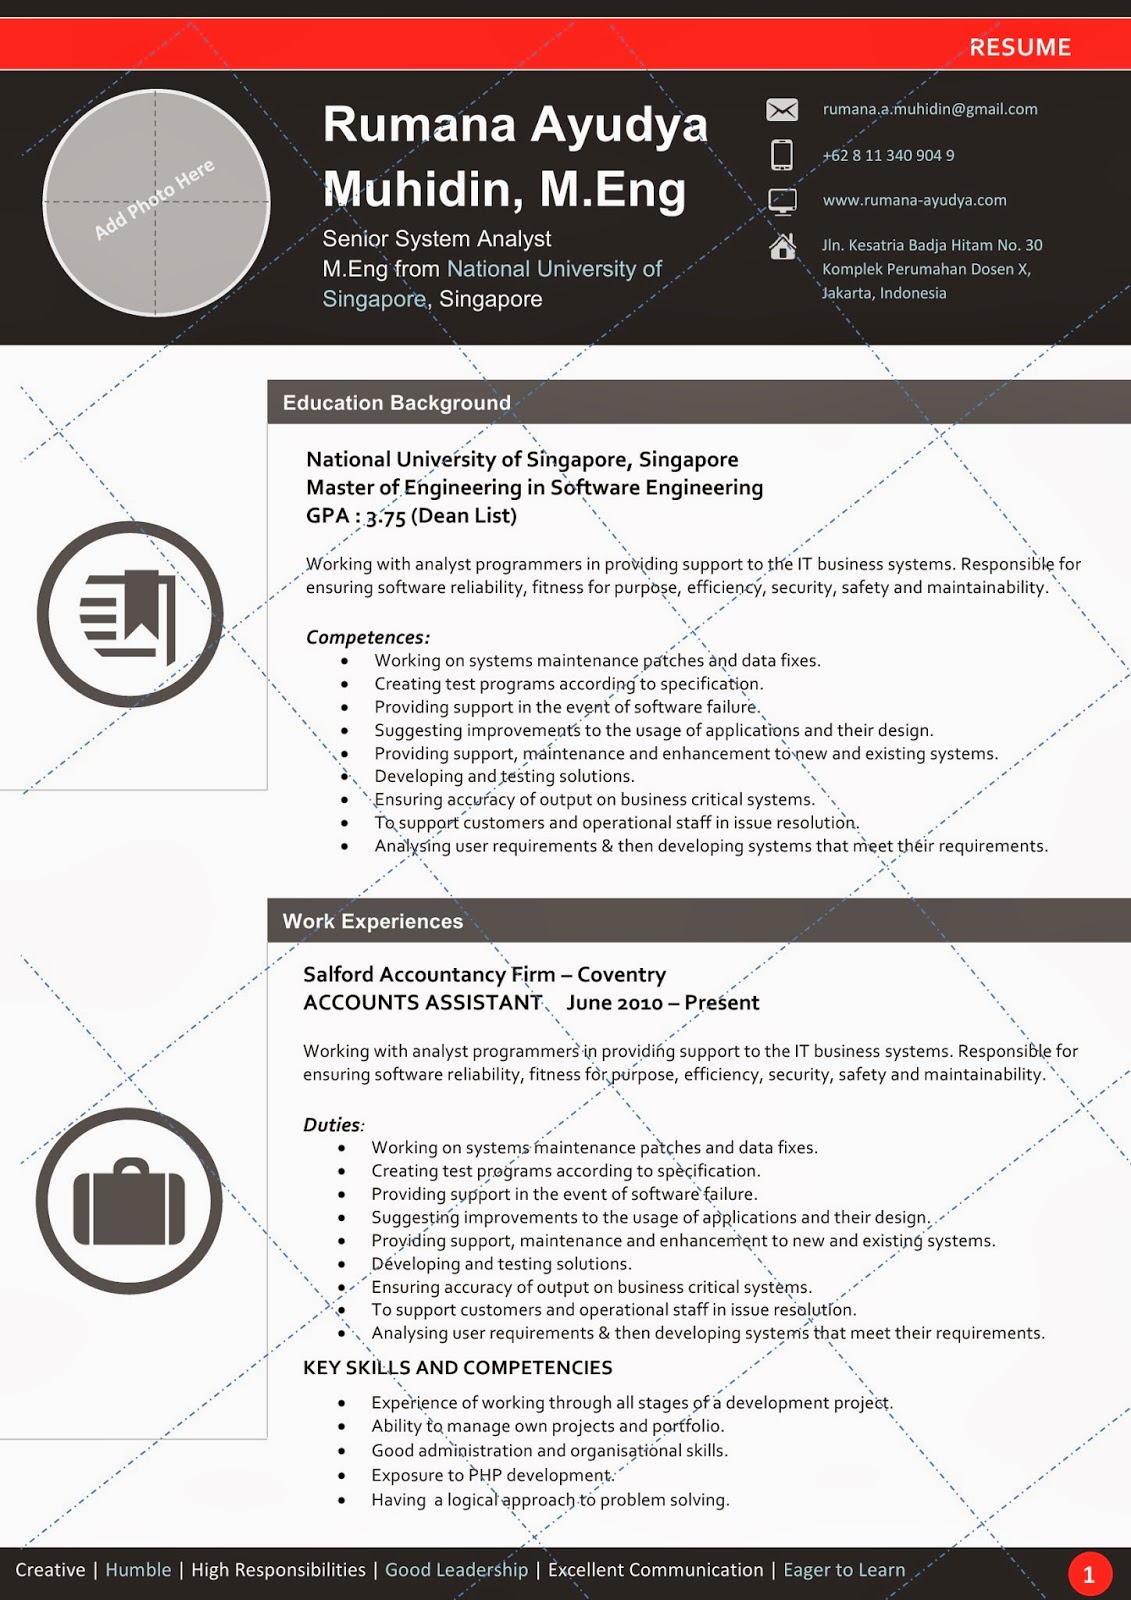 Desain CV Kreatif: RedBlack - Contoh CV / Resume Template